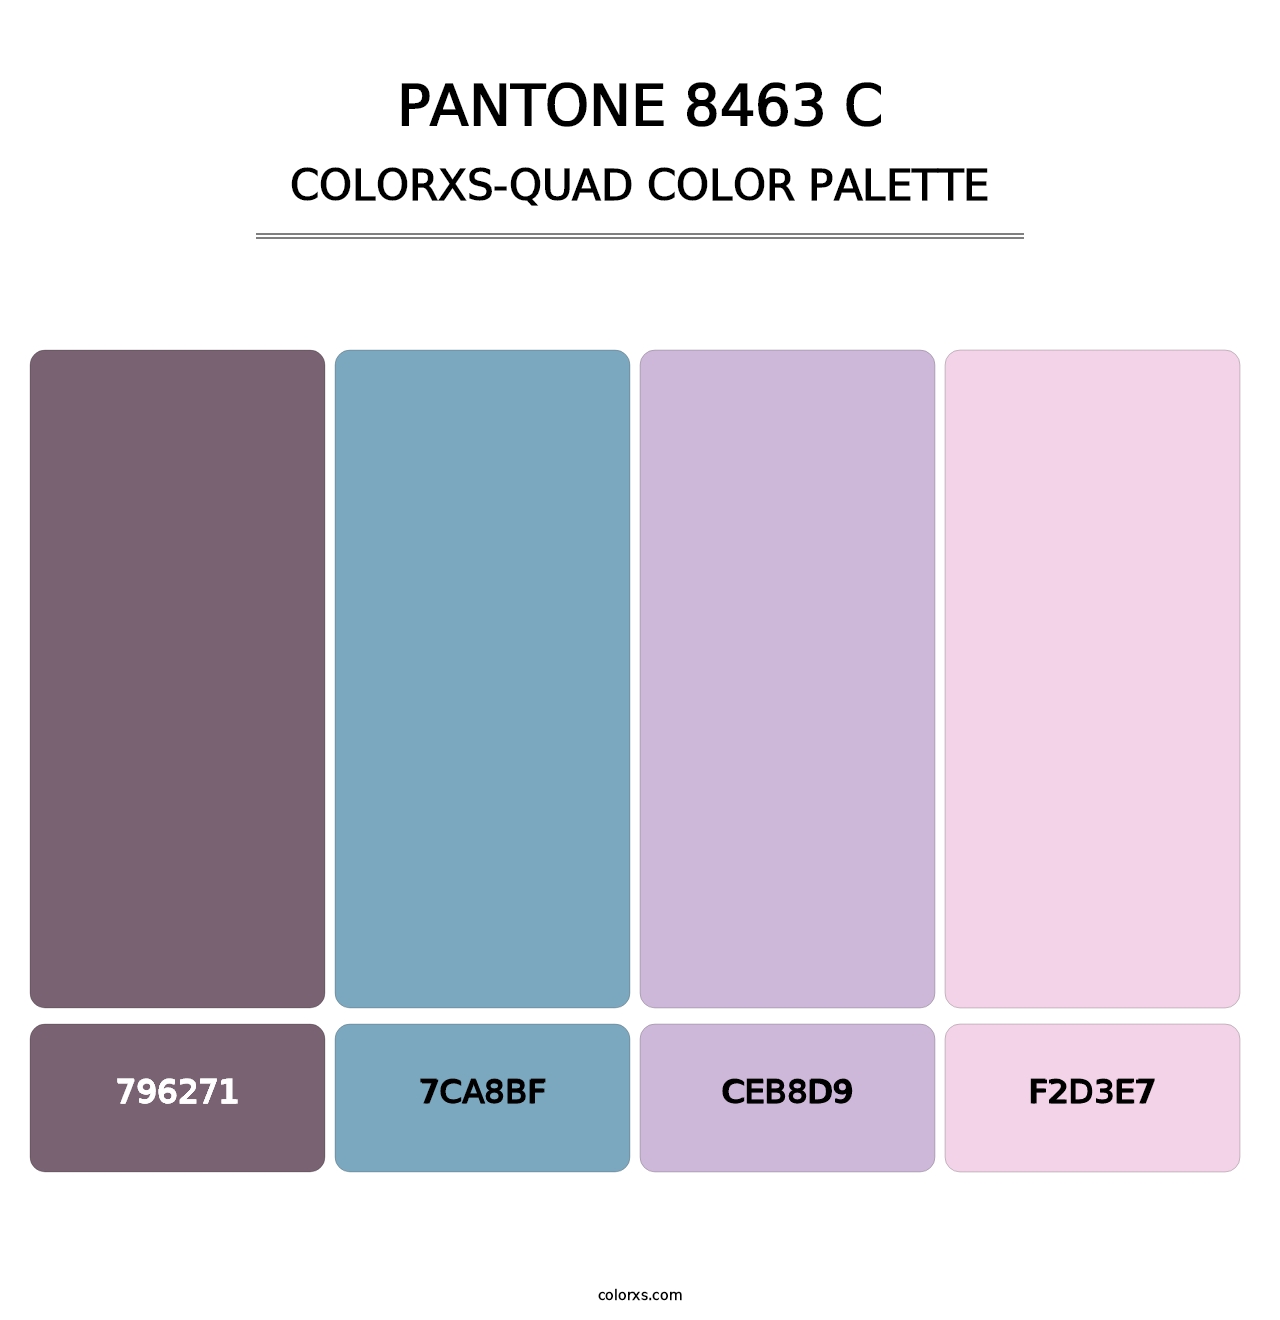 PANTONE 8463 C - Colorxs Quad Palette